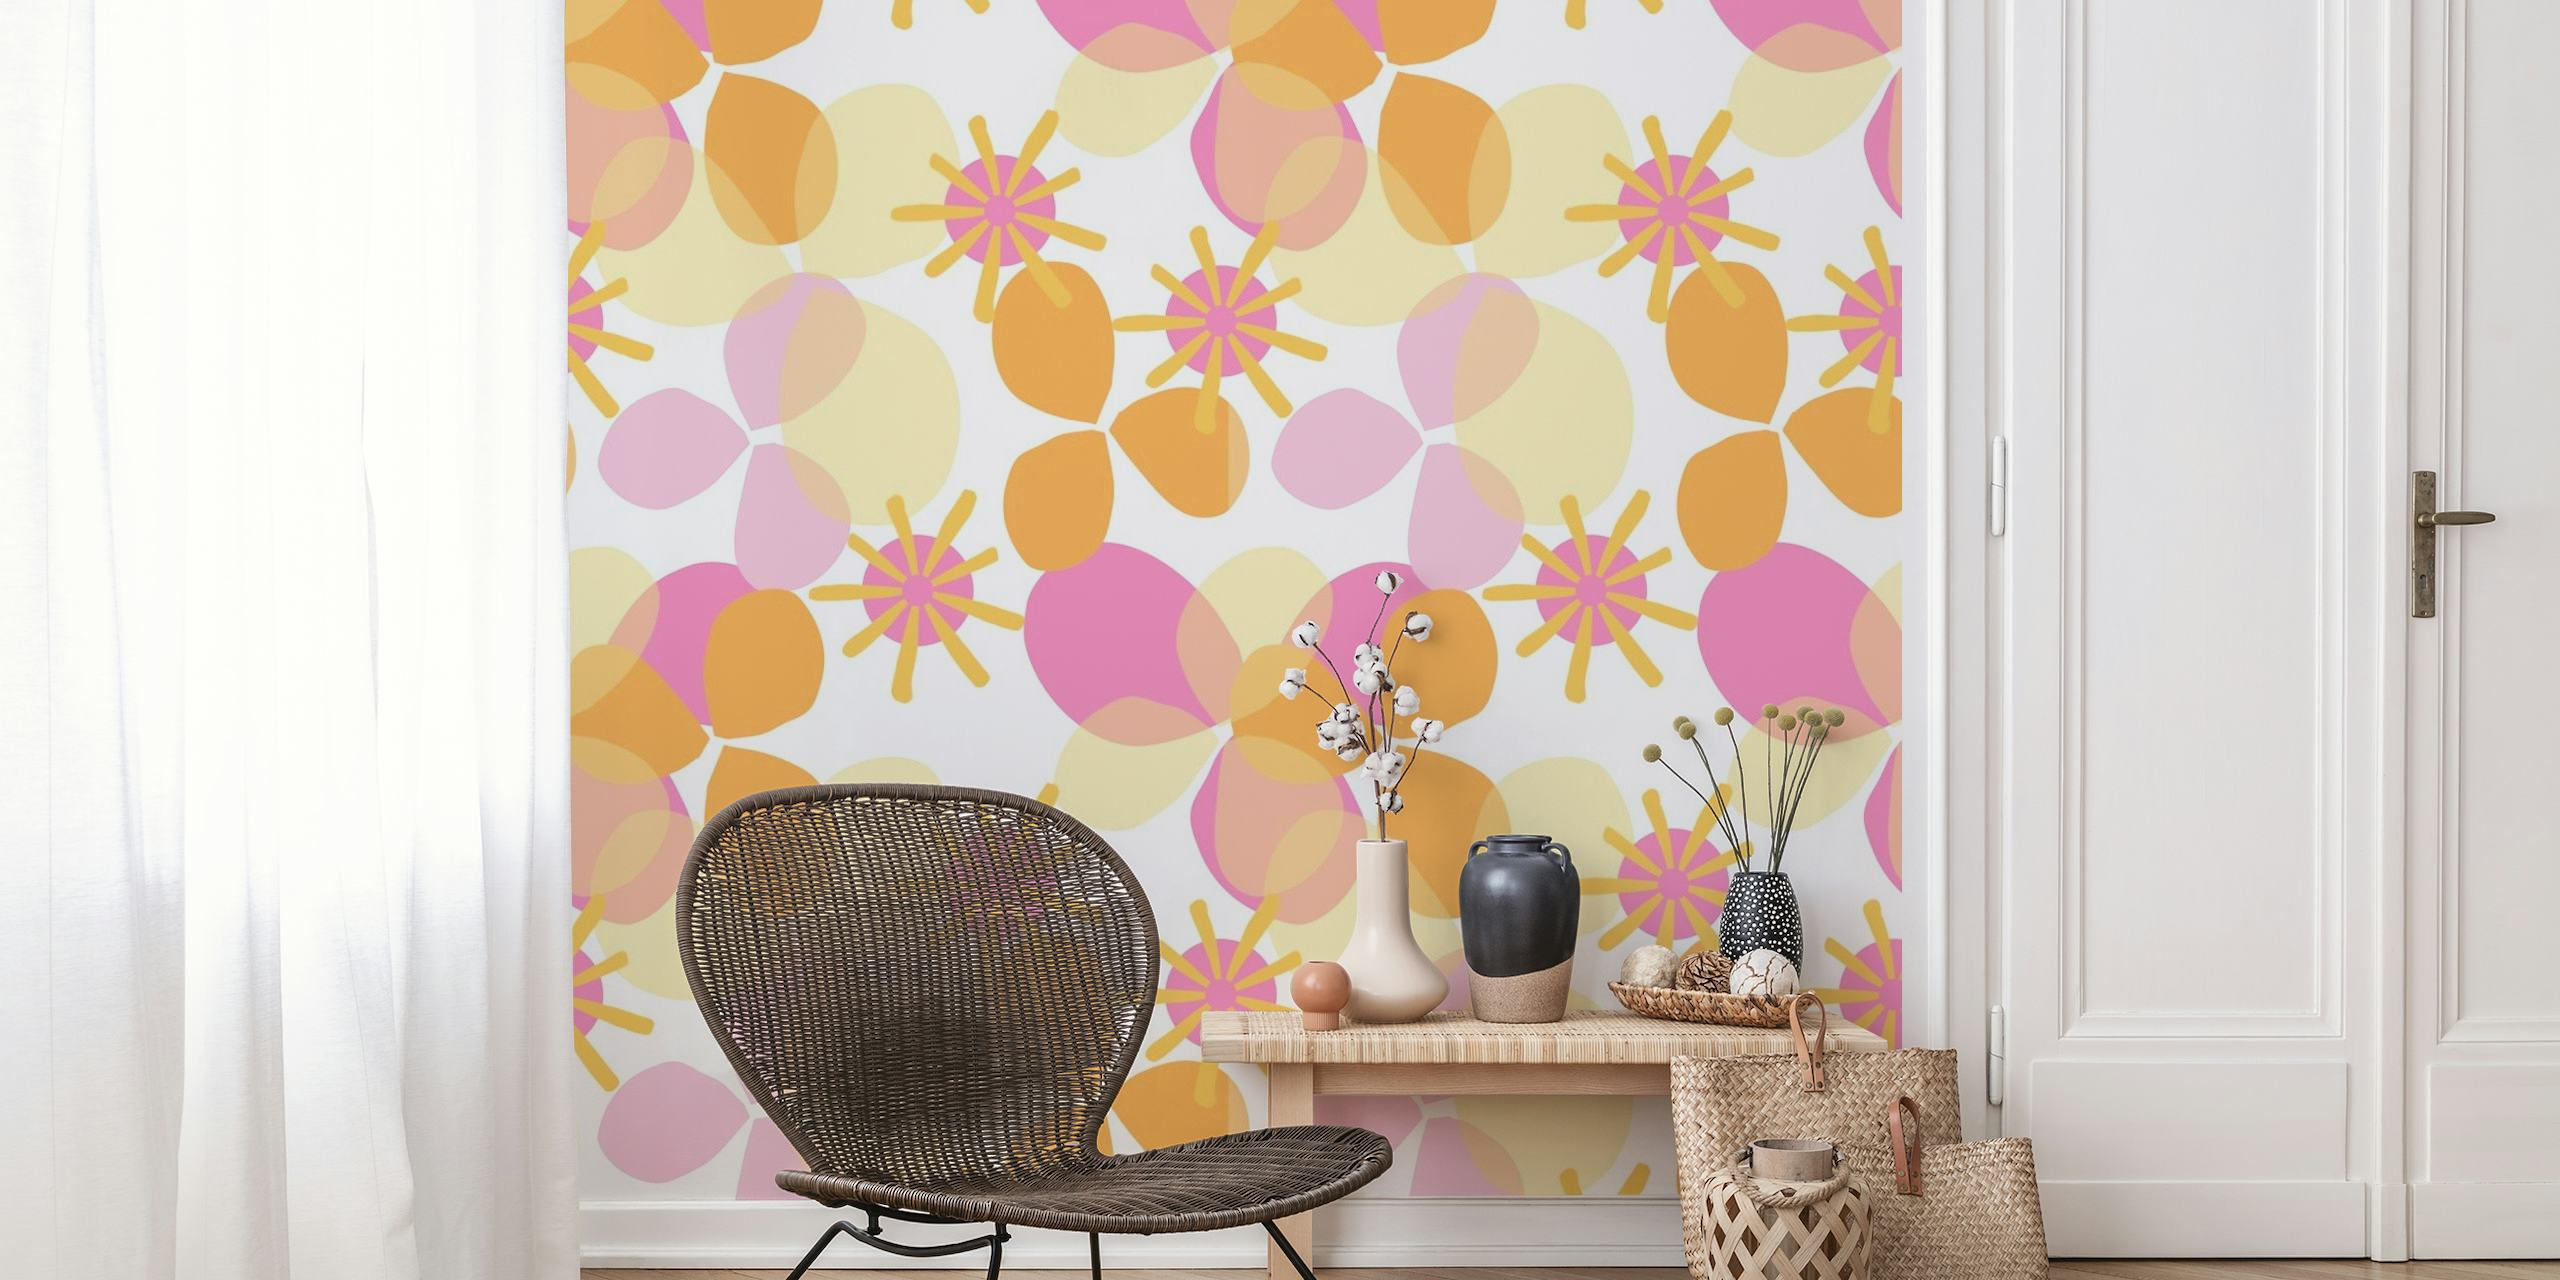 Farbenfrohes Wandbild mit geometrischem und floralem Muster namens Party Play